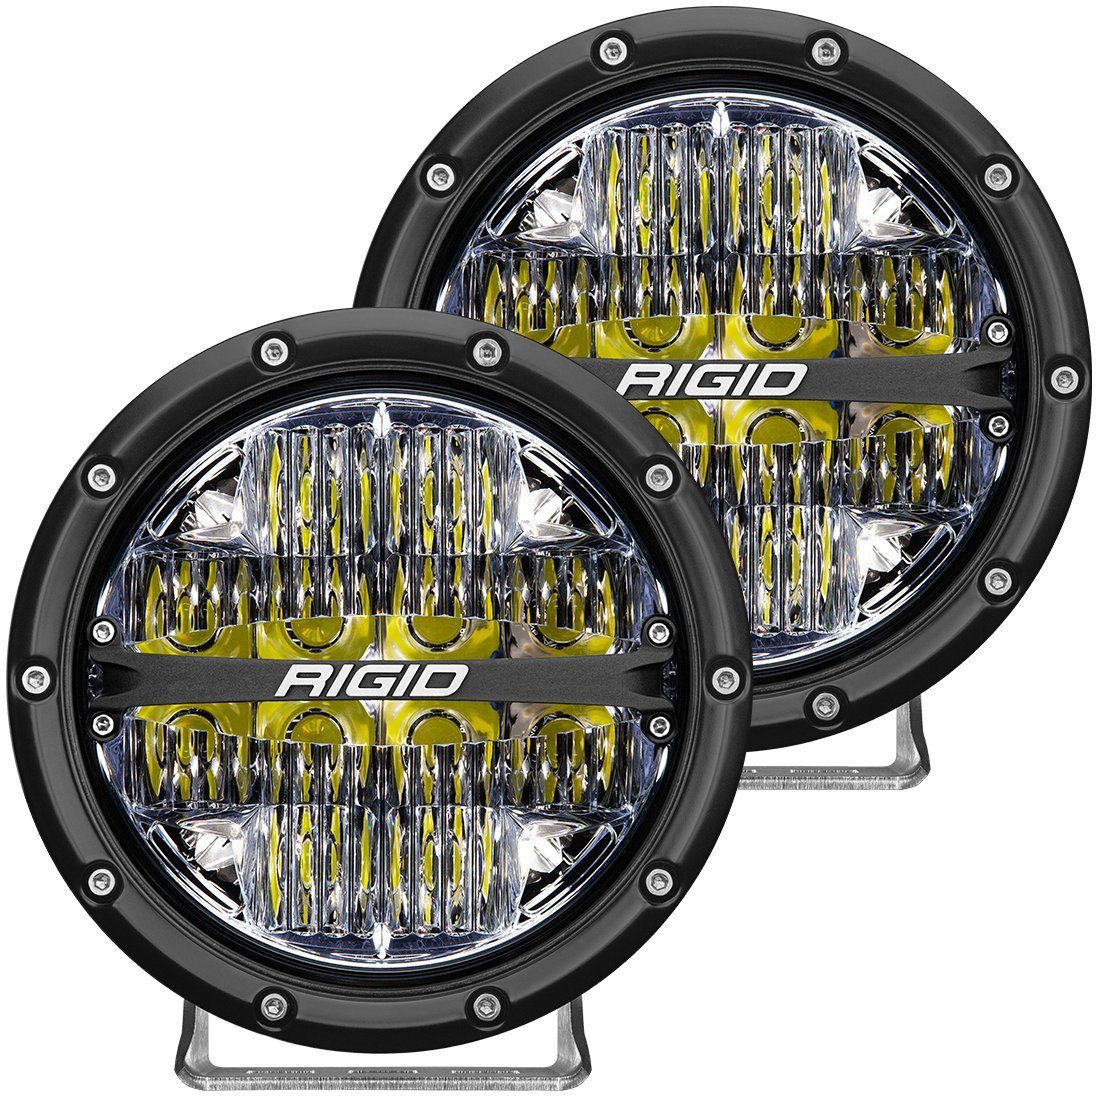 360 Series 6" LED OE Off-Road Fog Light Pair Lighting Rigid Industries display